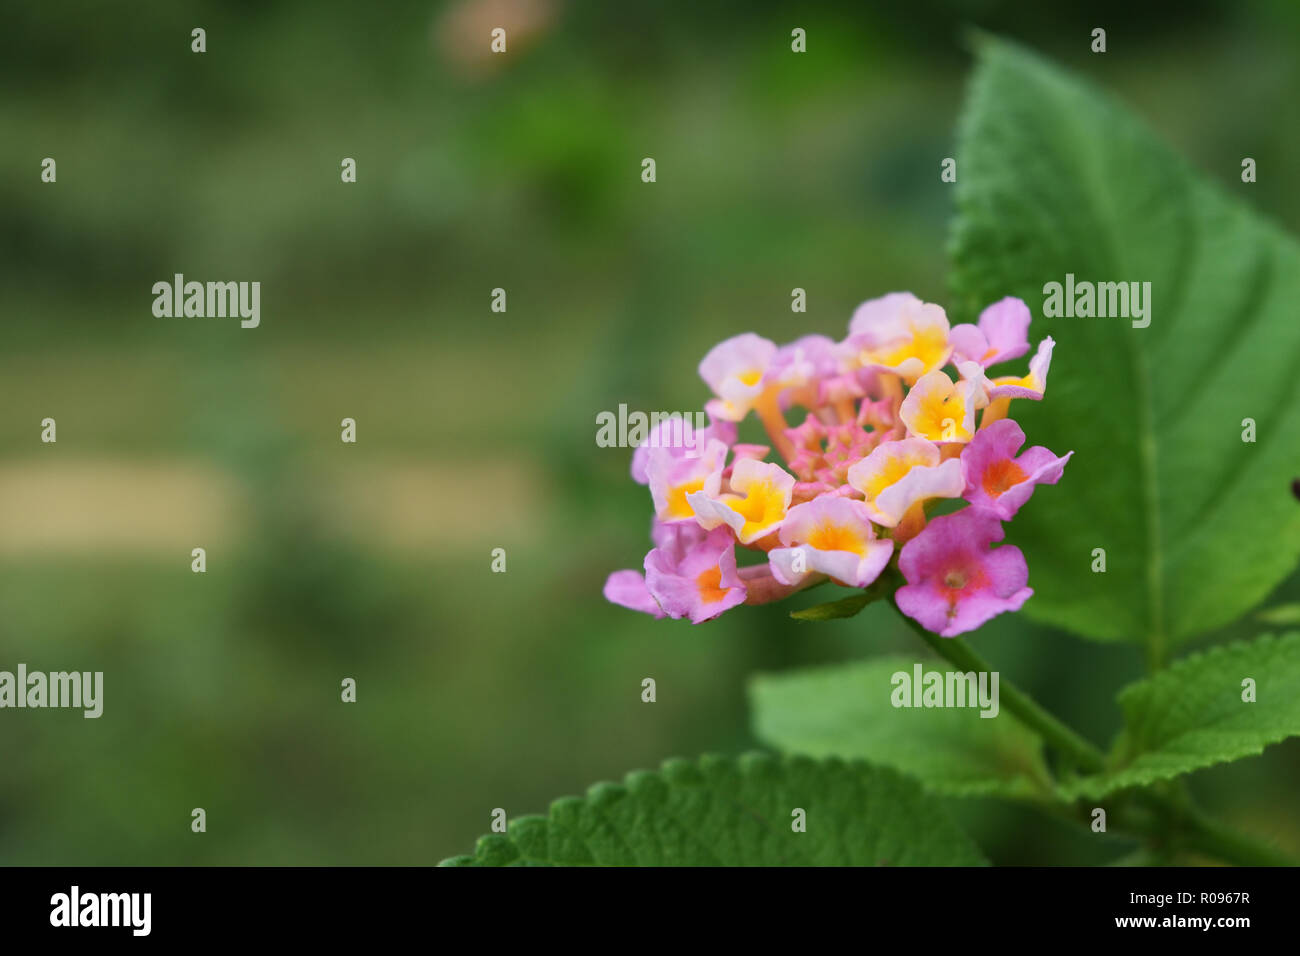 Westindische Lantana-Blüte ( Lantana camara ) mit natürlichem grünen Hintergrund, Gruppe von kleinen Blüten mit rosa Blütenblättern und gelben Pollen Stockfoto